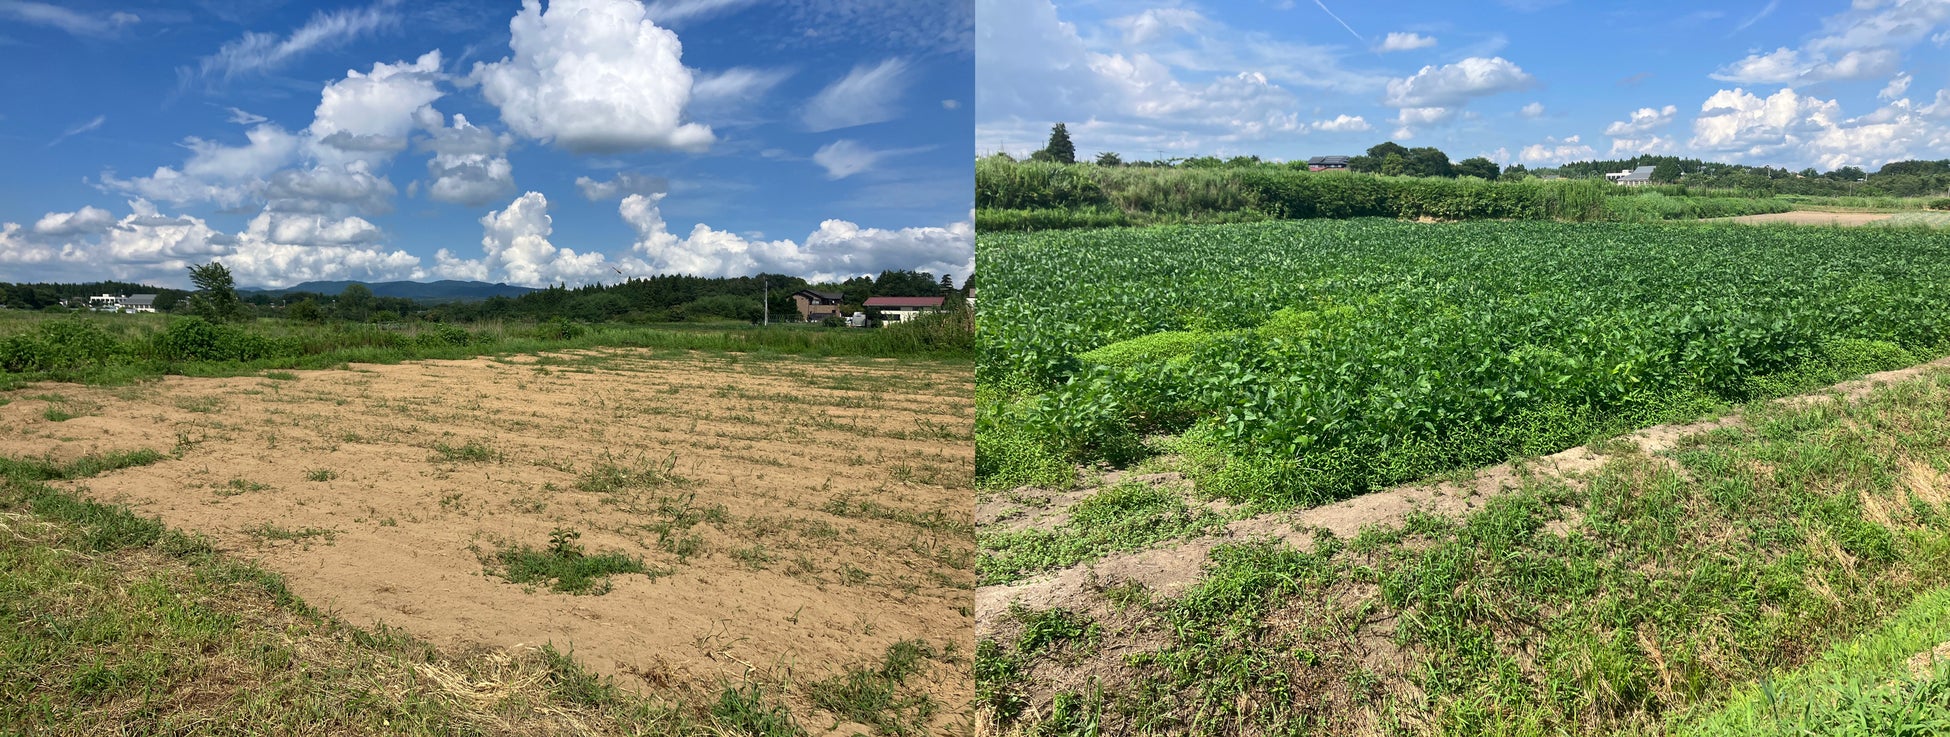 福島県矢吹町の農業型街づくりにコンサルタントとして参画、14haの水田を畑地化して農業法人に貸し出すプロジェクトのサブ画像2